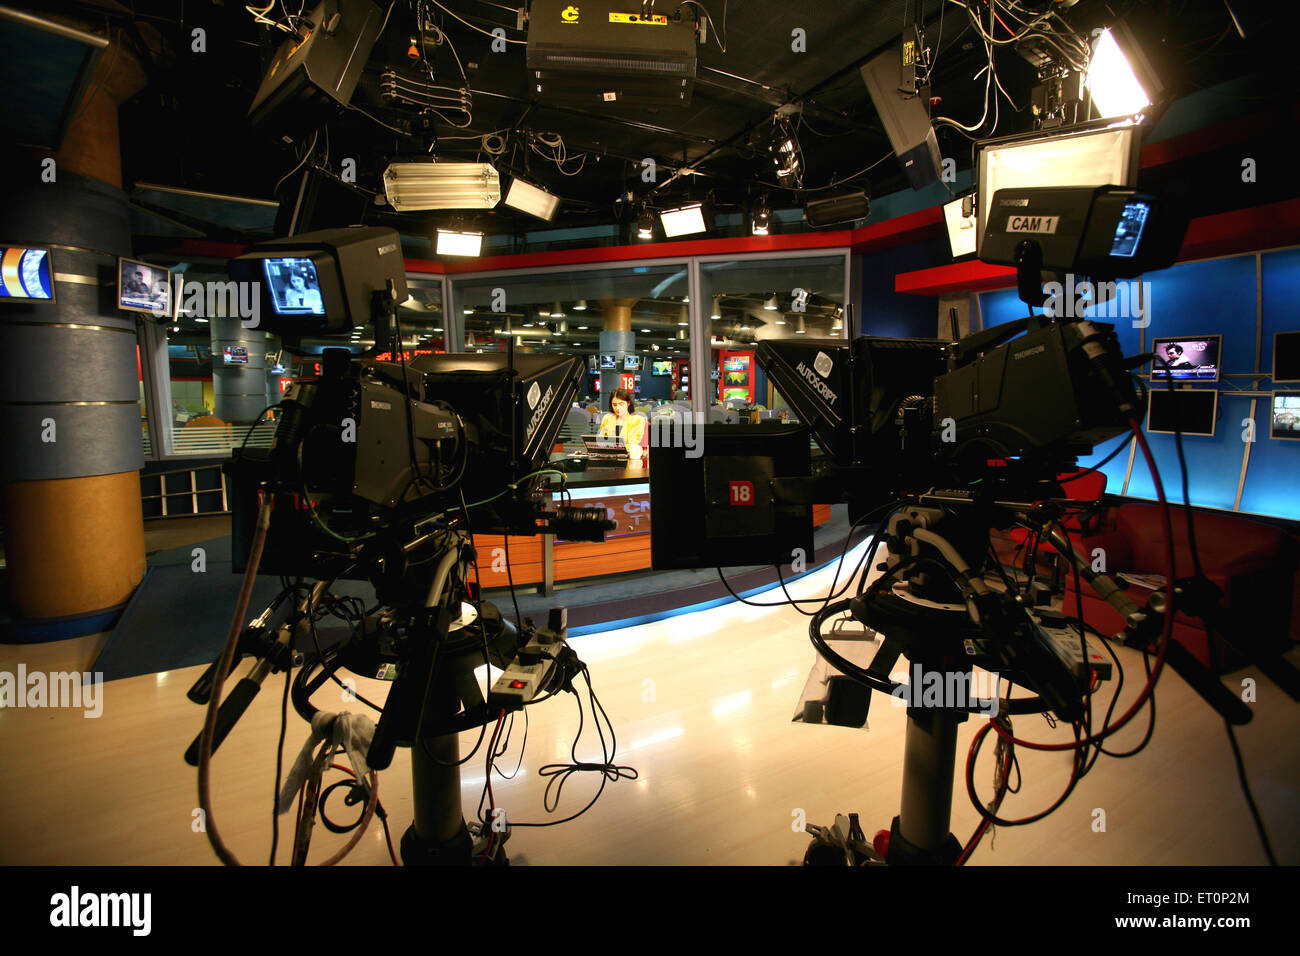 Salle de presse de CNBC TV Channel, diffusion de nouvelles, studio de télévision salle de nouvelles, Inde Banque D'Images